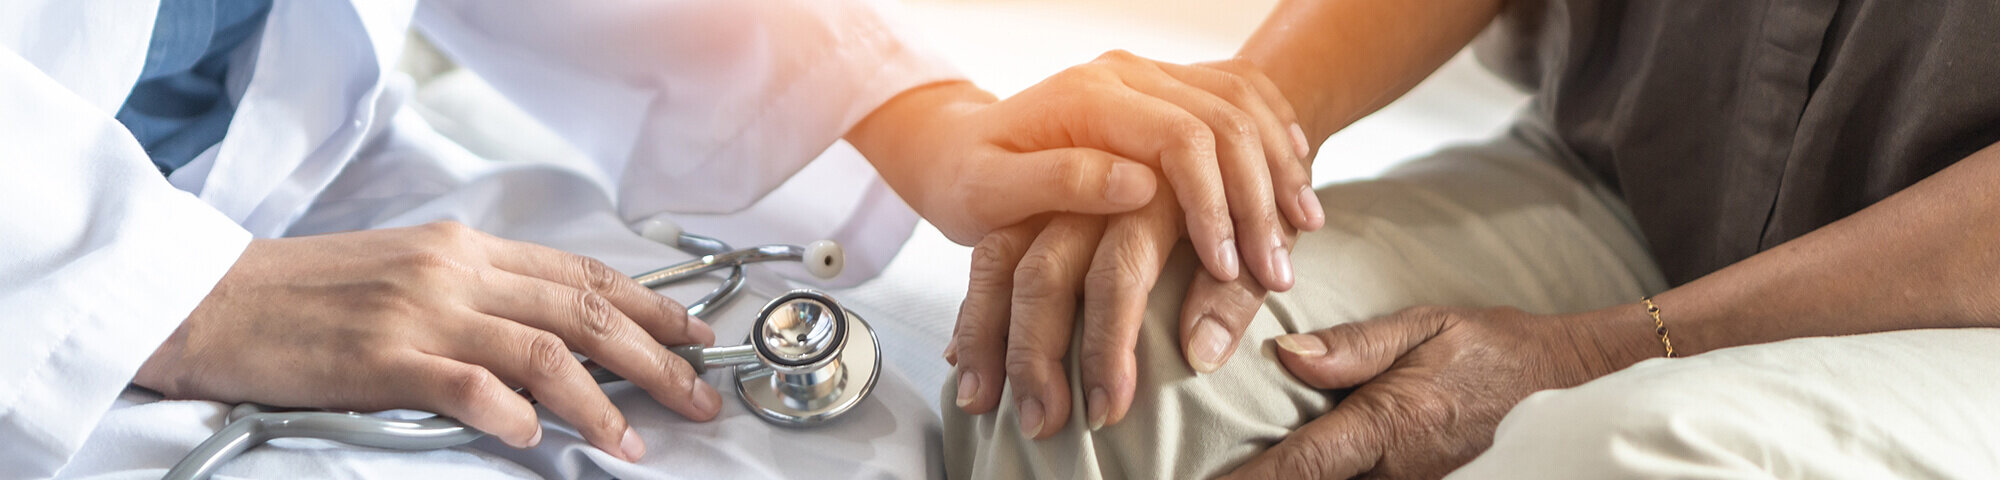 Arzt hält Hand eines Parkinson-Patienten